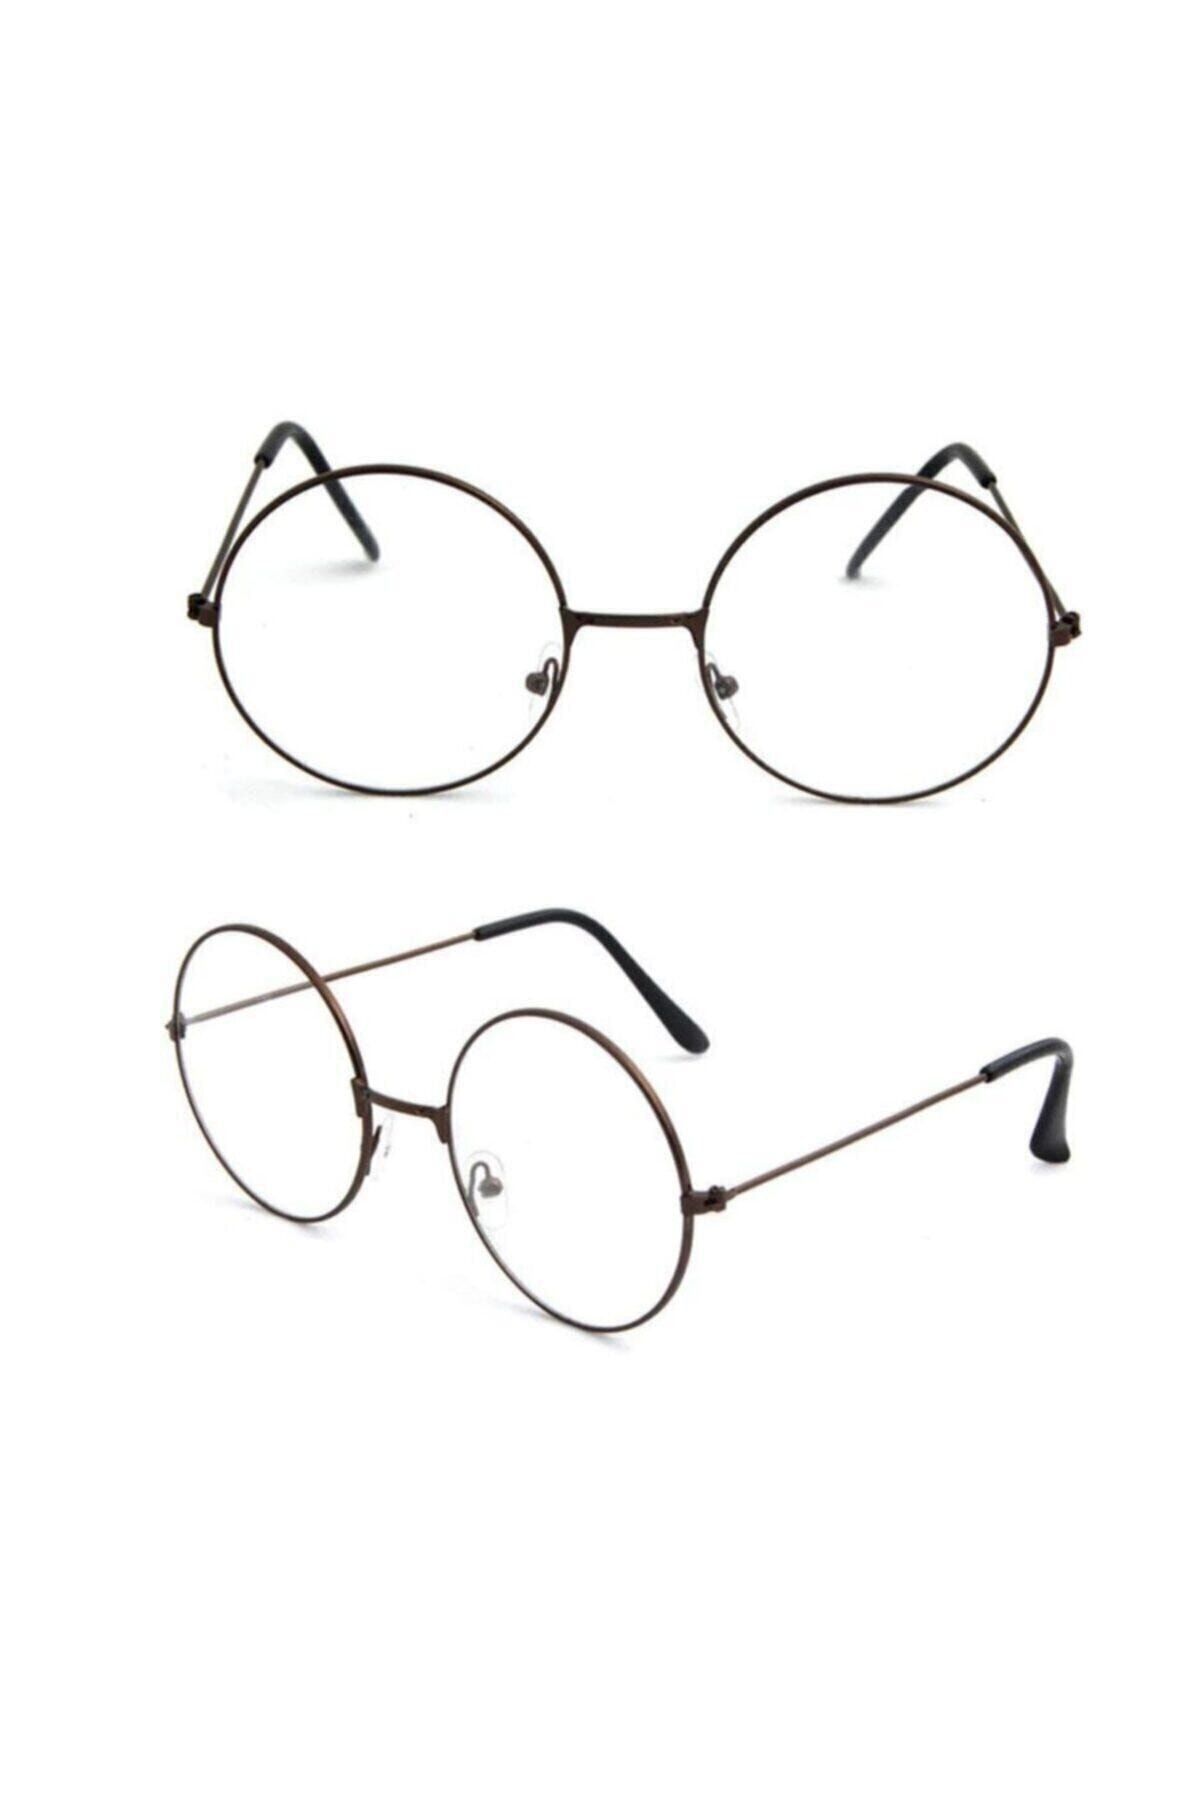 ALSANALDAN Unisex Harry Potter Anti Mavi Işınlı Retro Metal Çerçeve Şeffaf Lens Gözlük